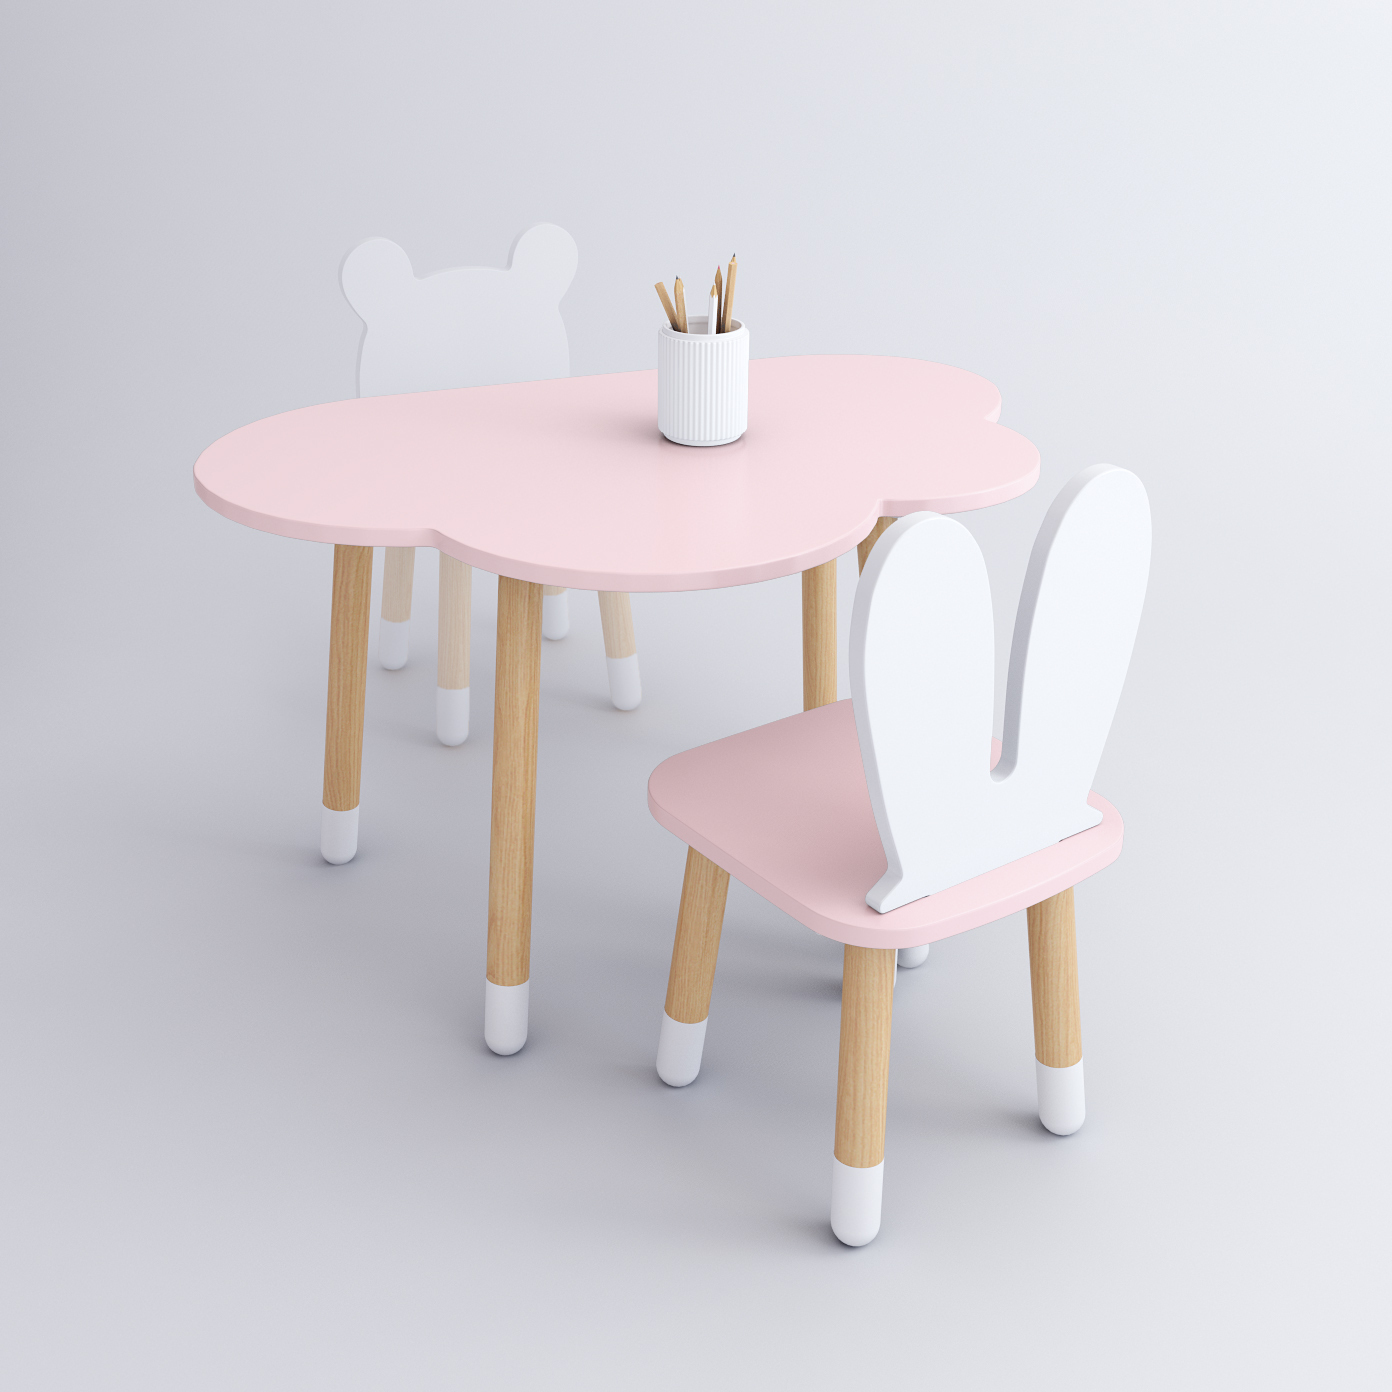 Комплект детской мебели DIMDOM kids, стол Облако розовый, стул Зайка розовый комплект детской мебели rules столик облачко и стульчик зайка белая и розовая эмаль